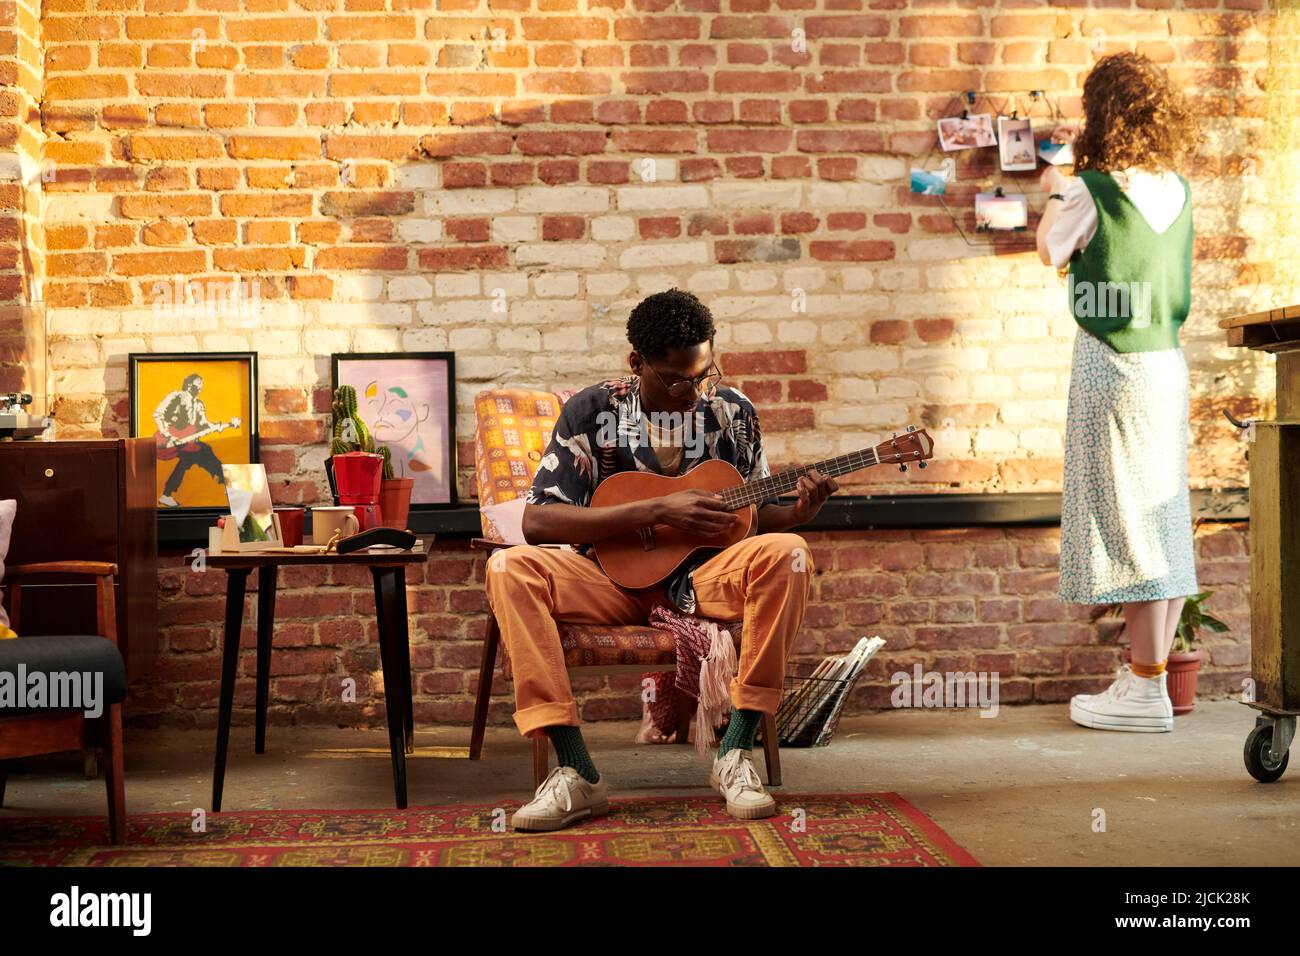 Junger Mann, der im Sessel sitzt und akustische Gitarre spielt, während seine Freundin vor einer Backsteinmauer steht und Fotos anschaut Stockfoto